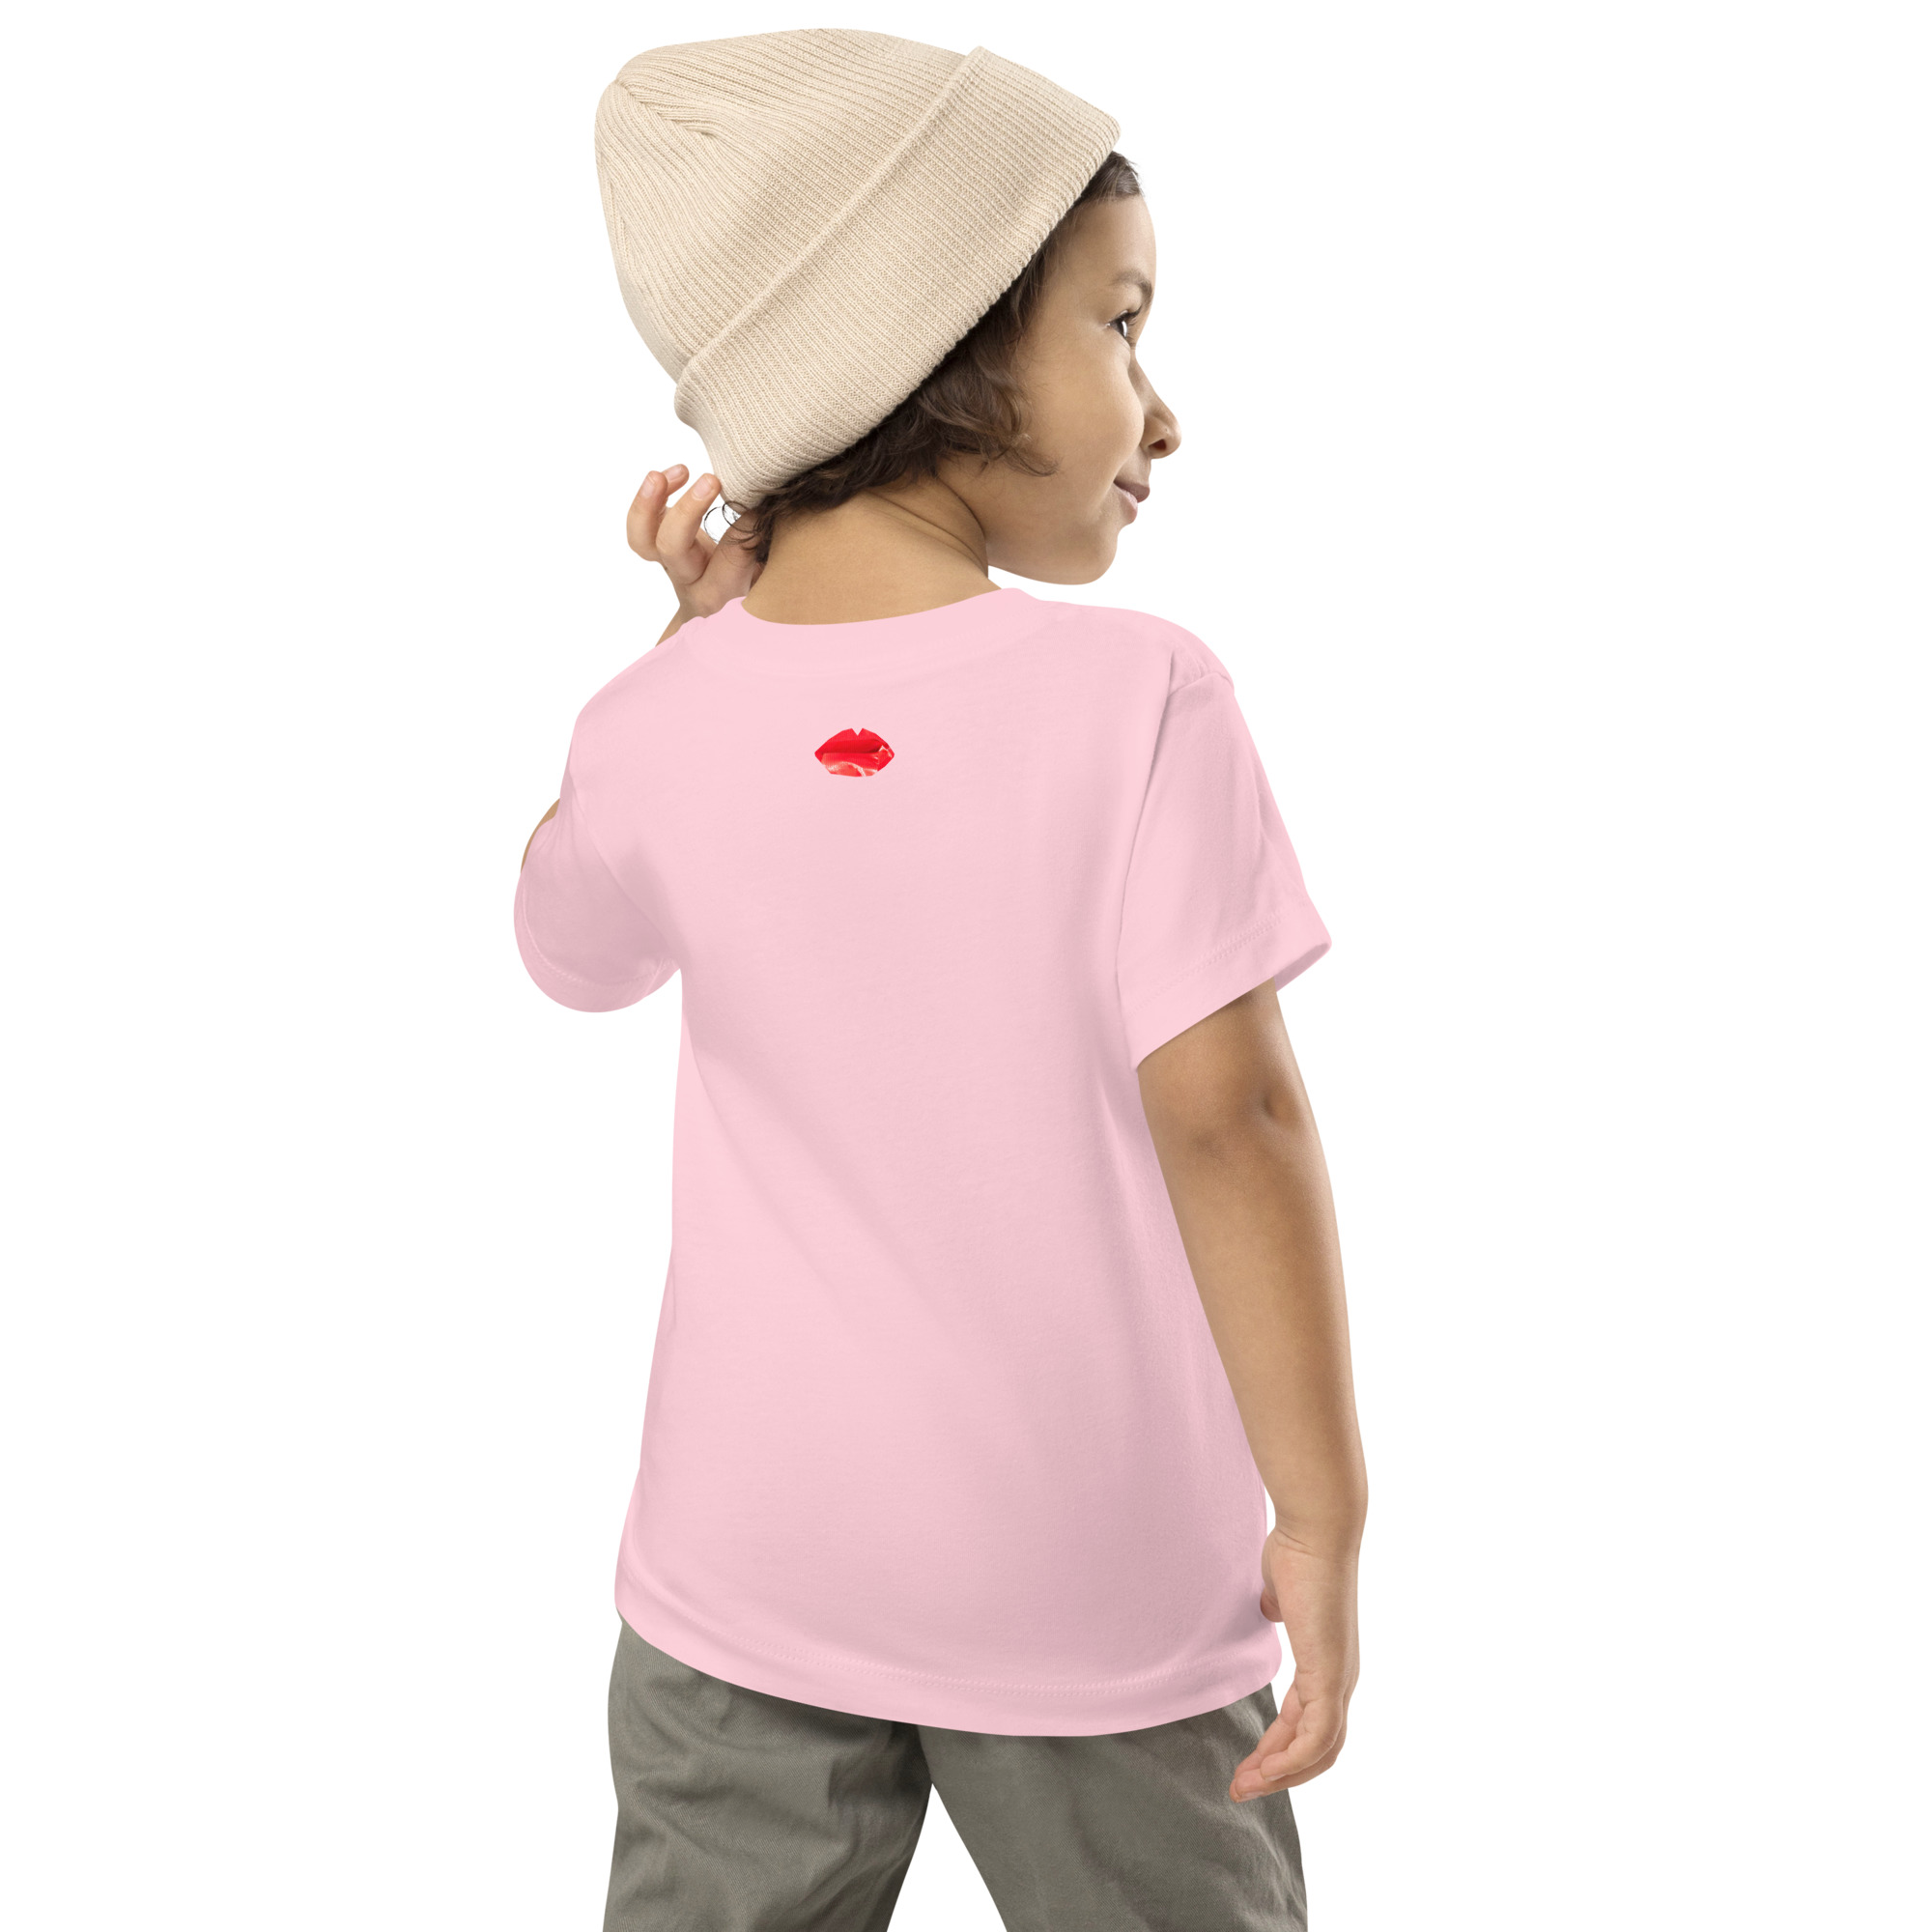 toddler-staple-tee-pink-back-637d3a108caa6.jpg